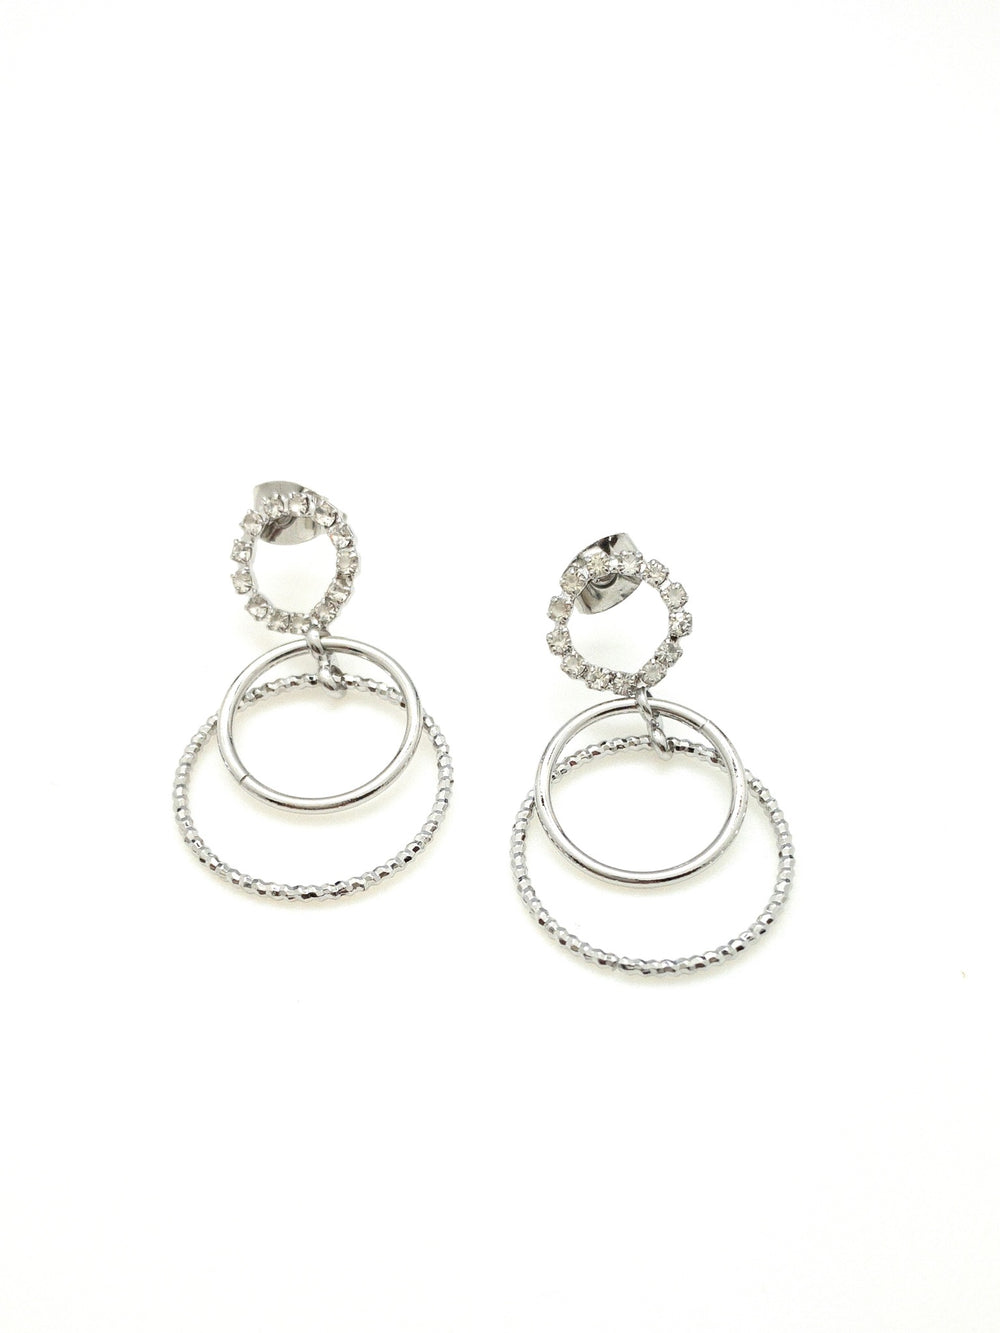 Kristy Sparkly earrings dangly hops in silver 